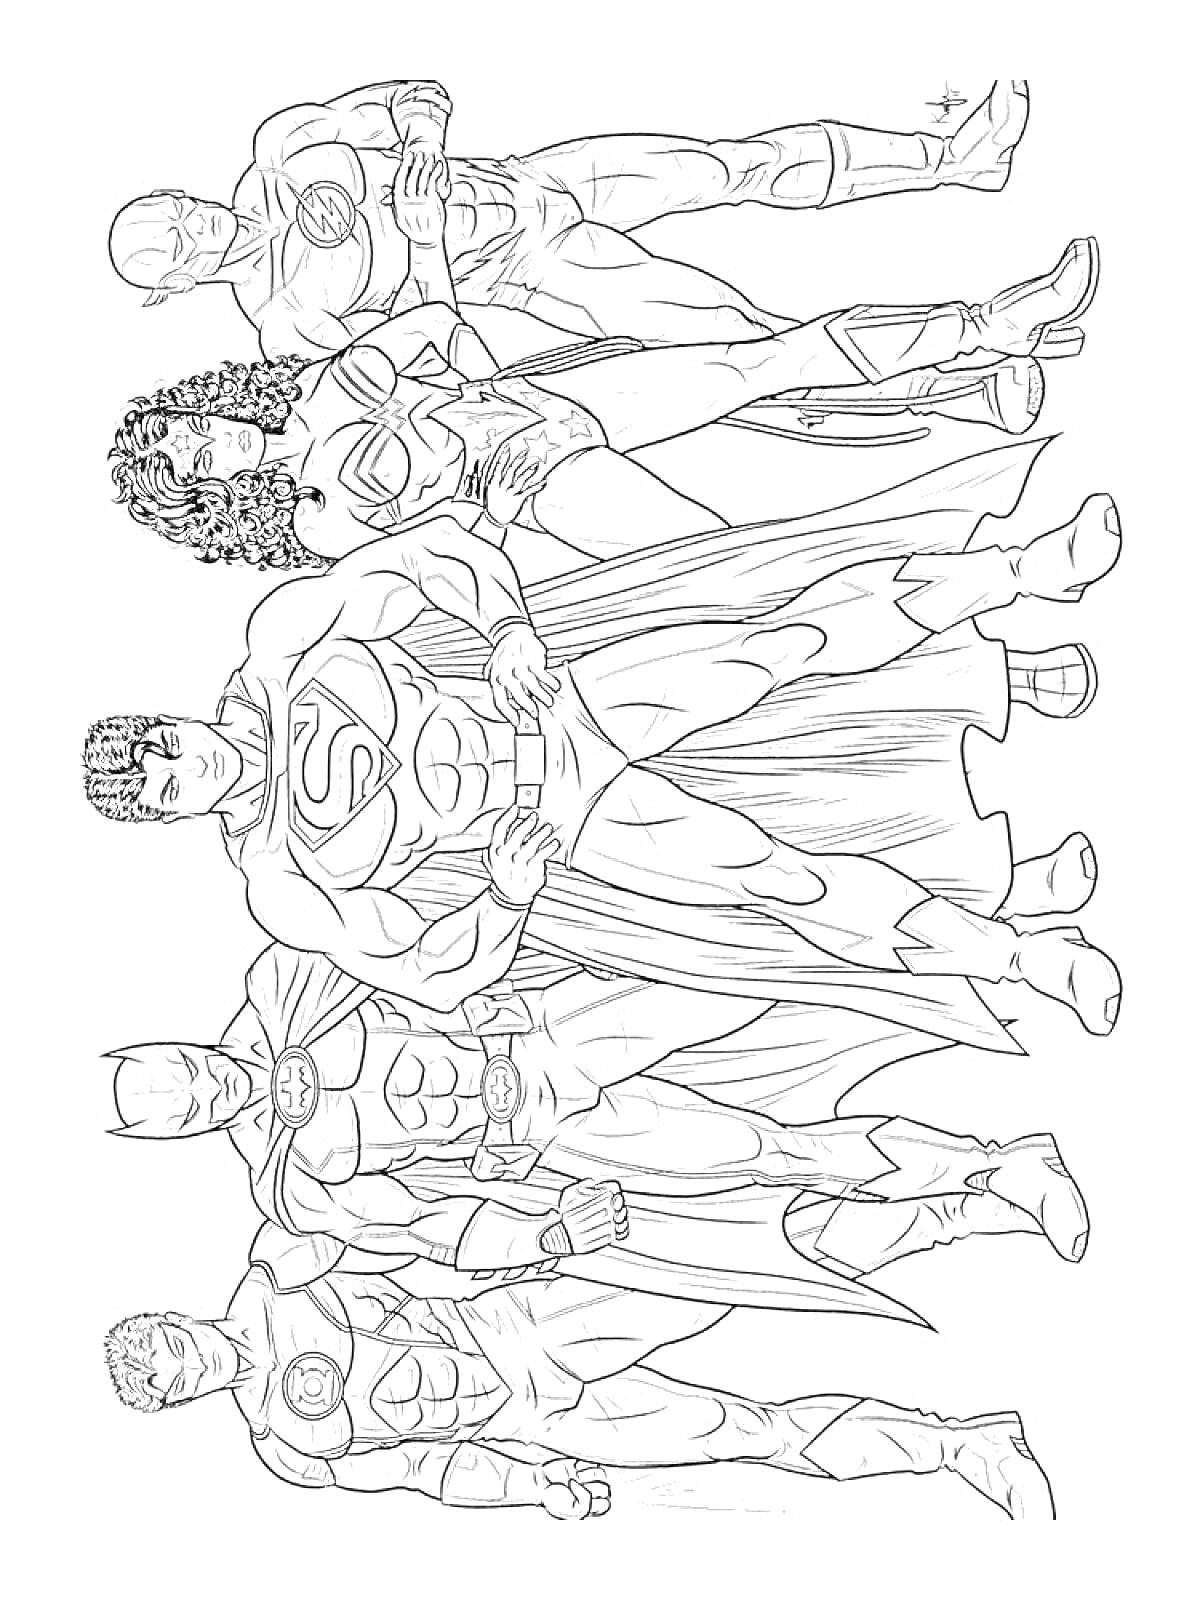 Группа супергероев в стоячем положении, один с плащом, остальные четверо без плаща, в костюмах с логотипами на груди, женский персонаж с развевающимися волосами и короткой юбкой